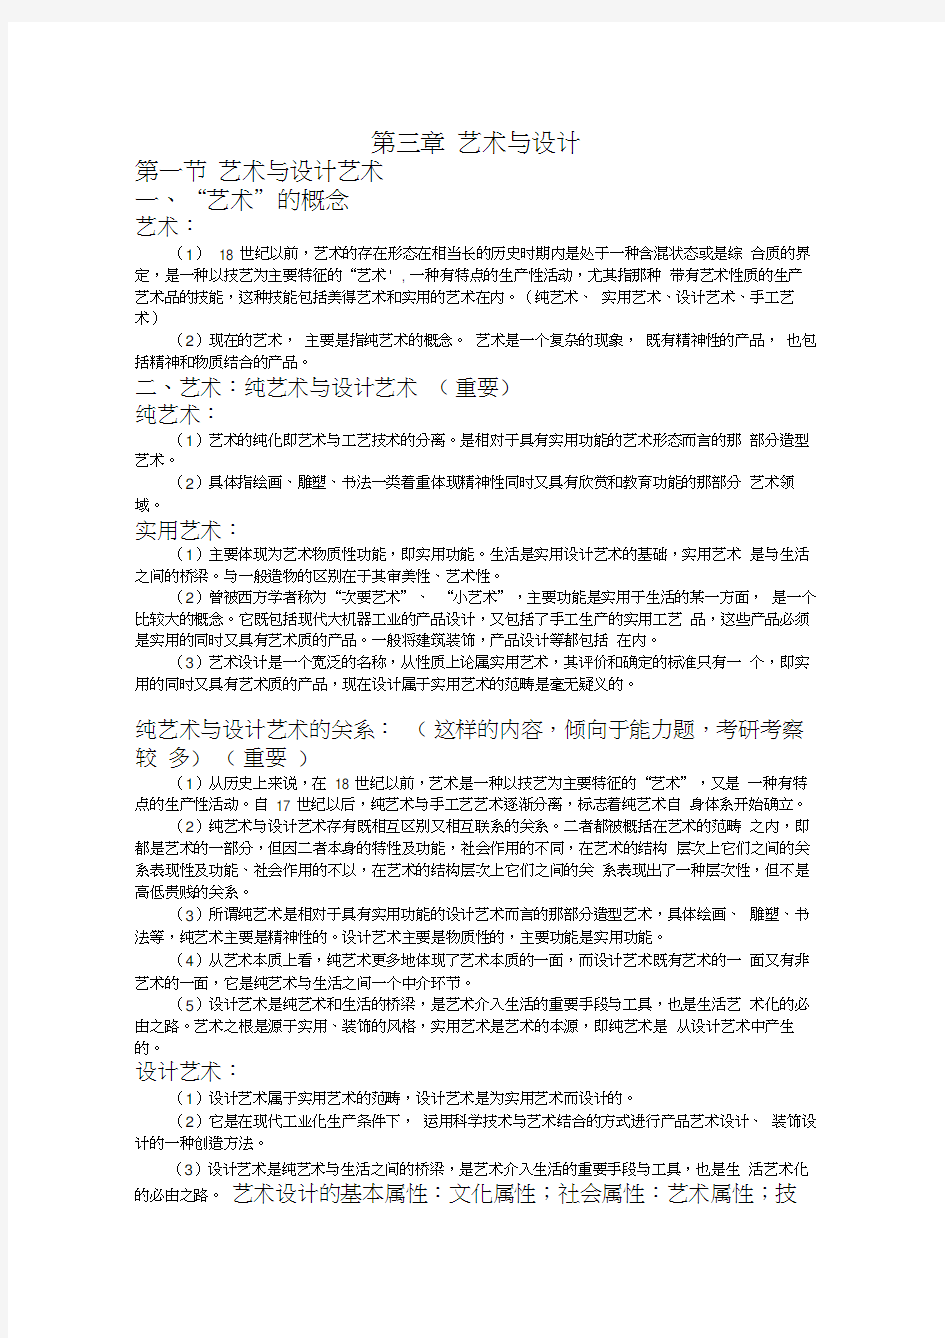 李砚祖编著《艺术设计概论》考研核心笔记3汇编